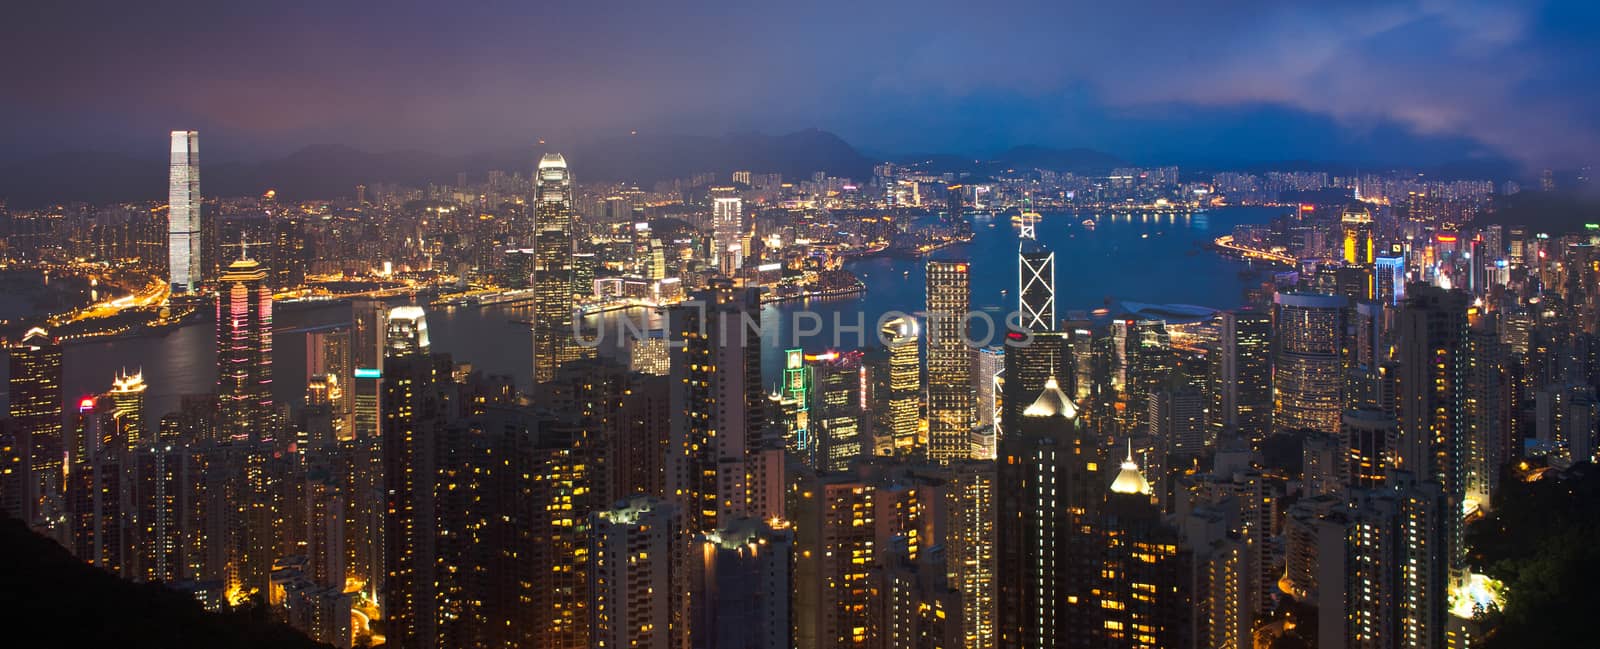 Hong Kong cityscape at night panorama